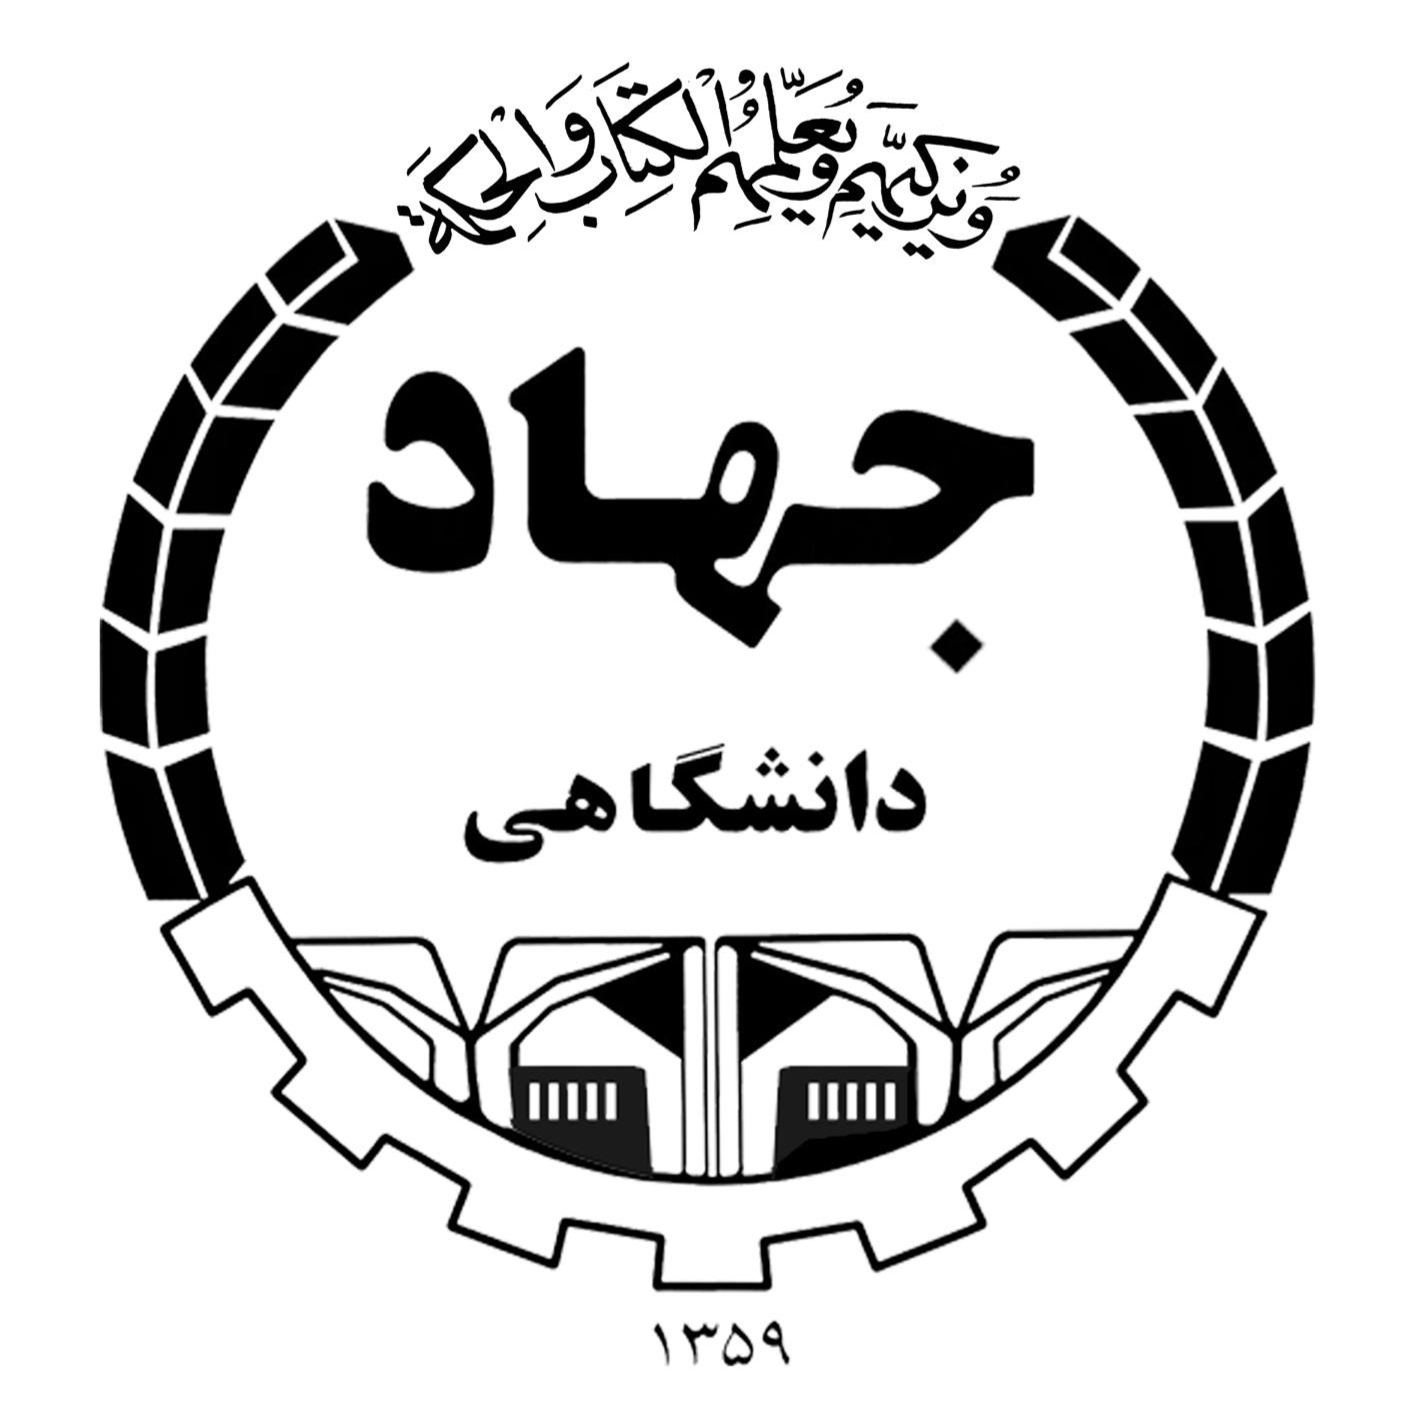 سازمان دانشجویی جهاد دانشگاهی علوم پزشکی تهران